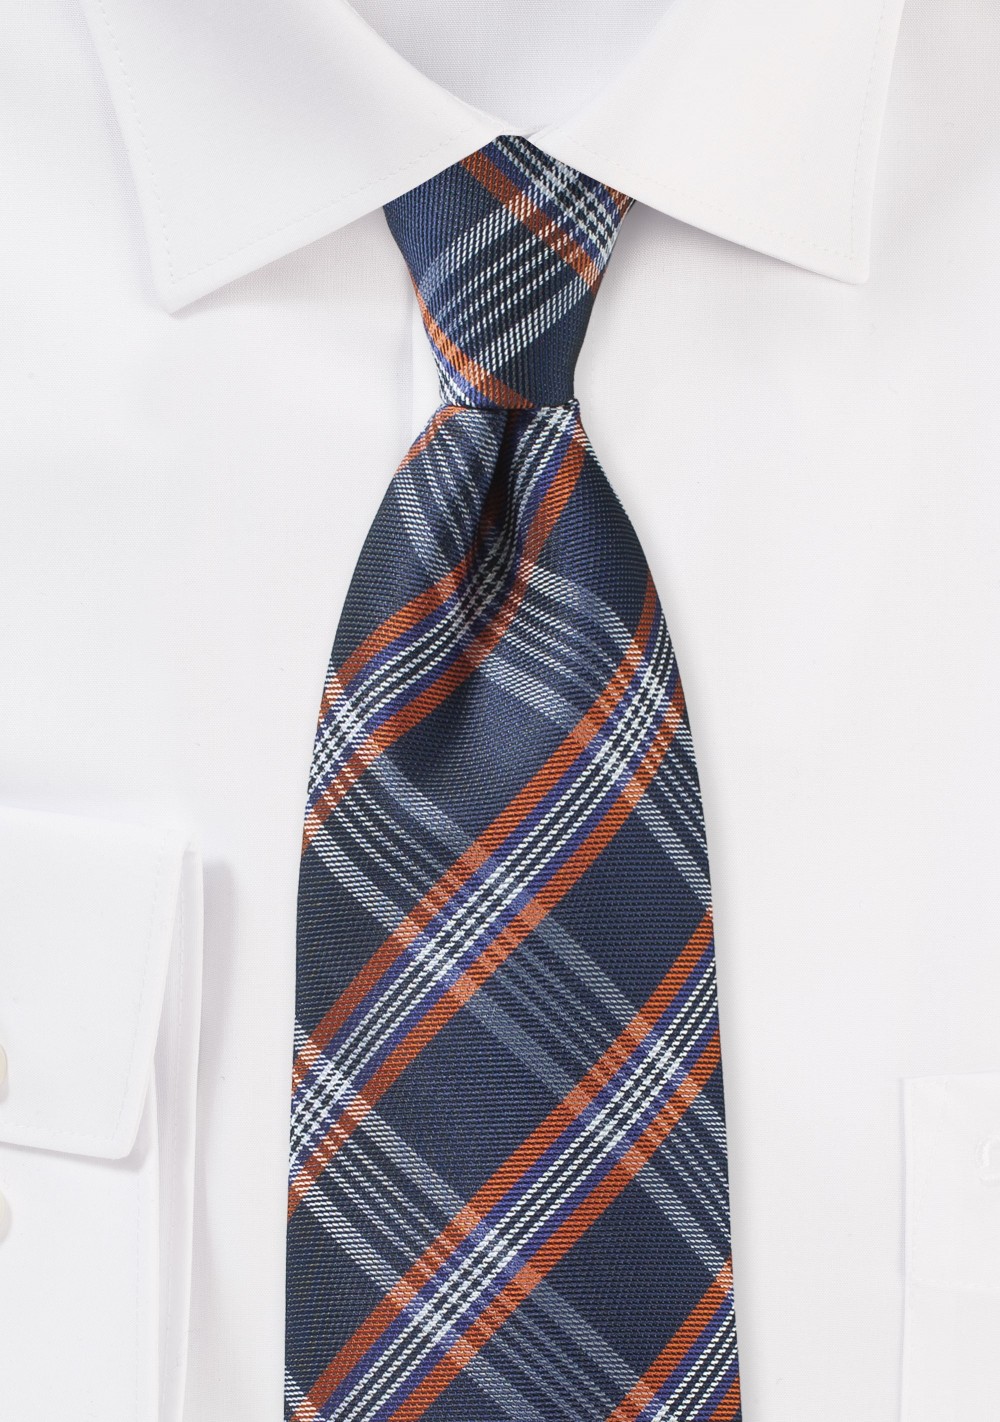 XL Tartan Plaid Tie in Navy and Orange